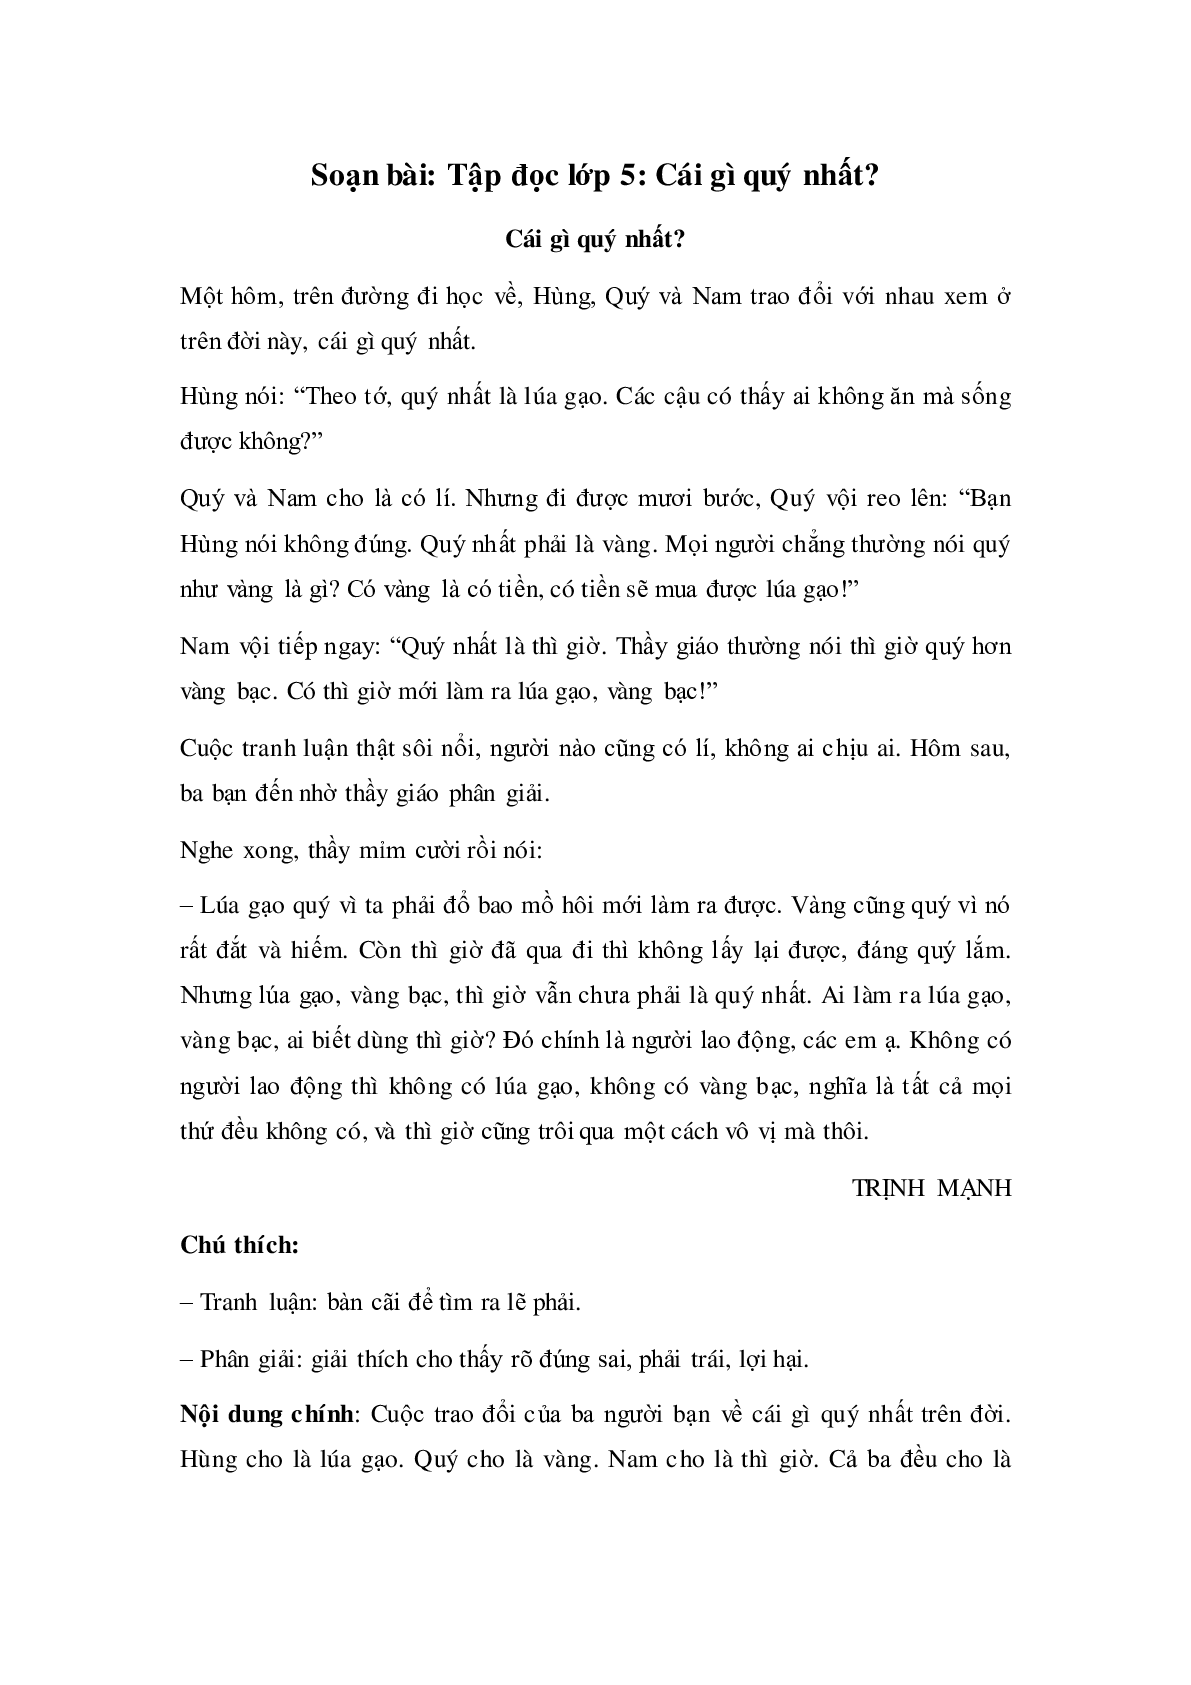 Soạn Tiếng Việt lớp 5: Tập đọc: Cái gì quý nhất mới nhất (trang 1)